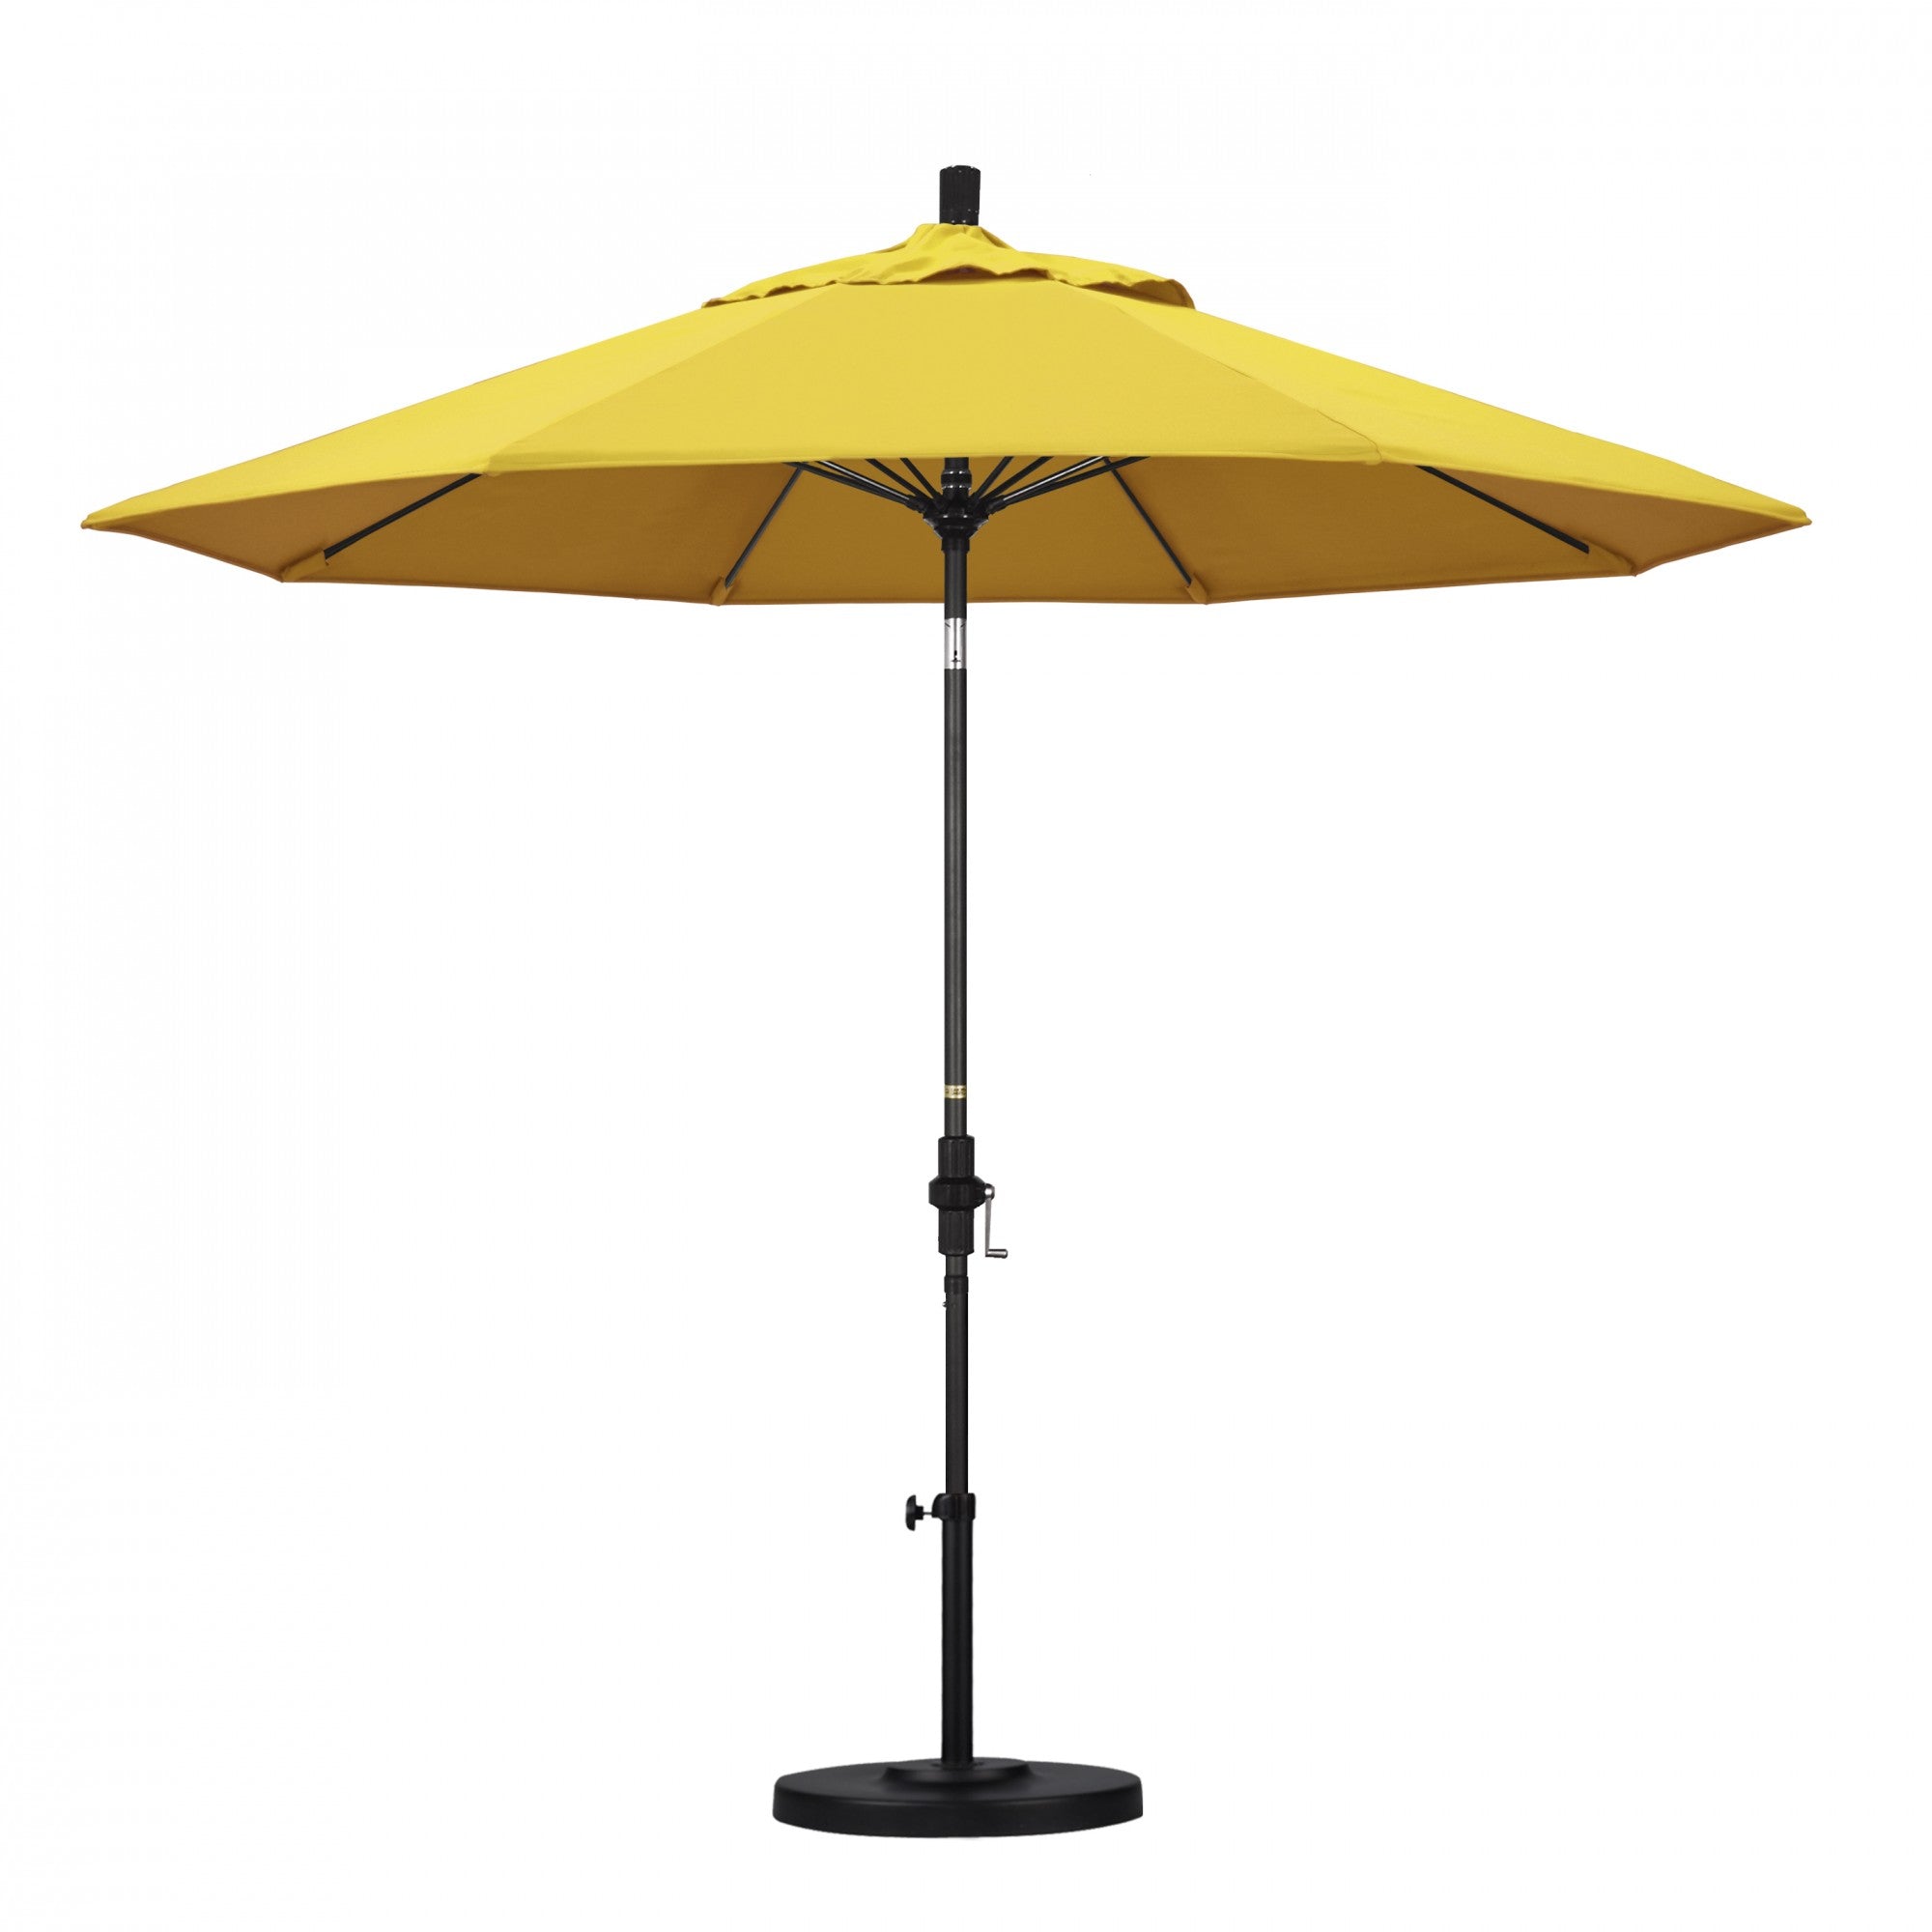 California Umbrella - 9' - Patio Umbrella Umbrella - Aluminum Pole - Lemon - Olefin - GSCUF908705-F25